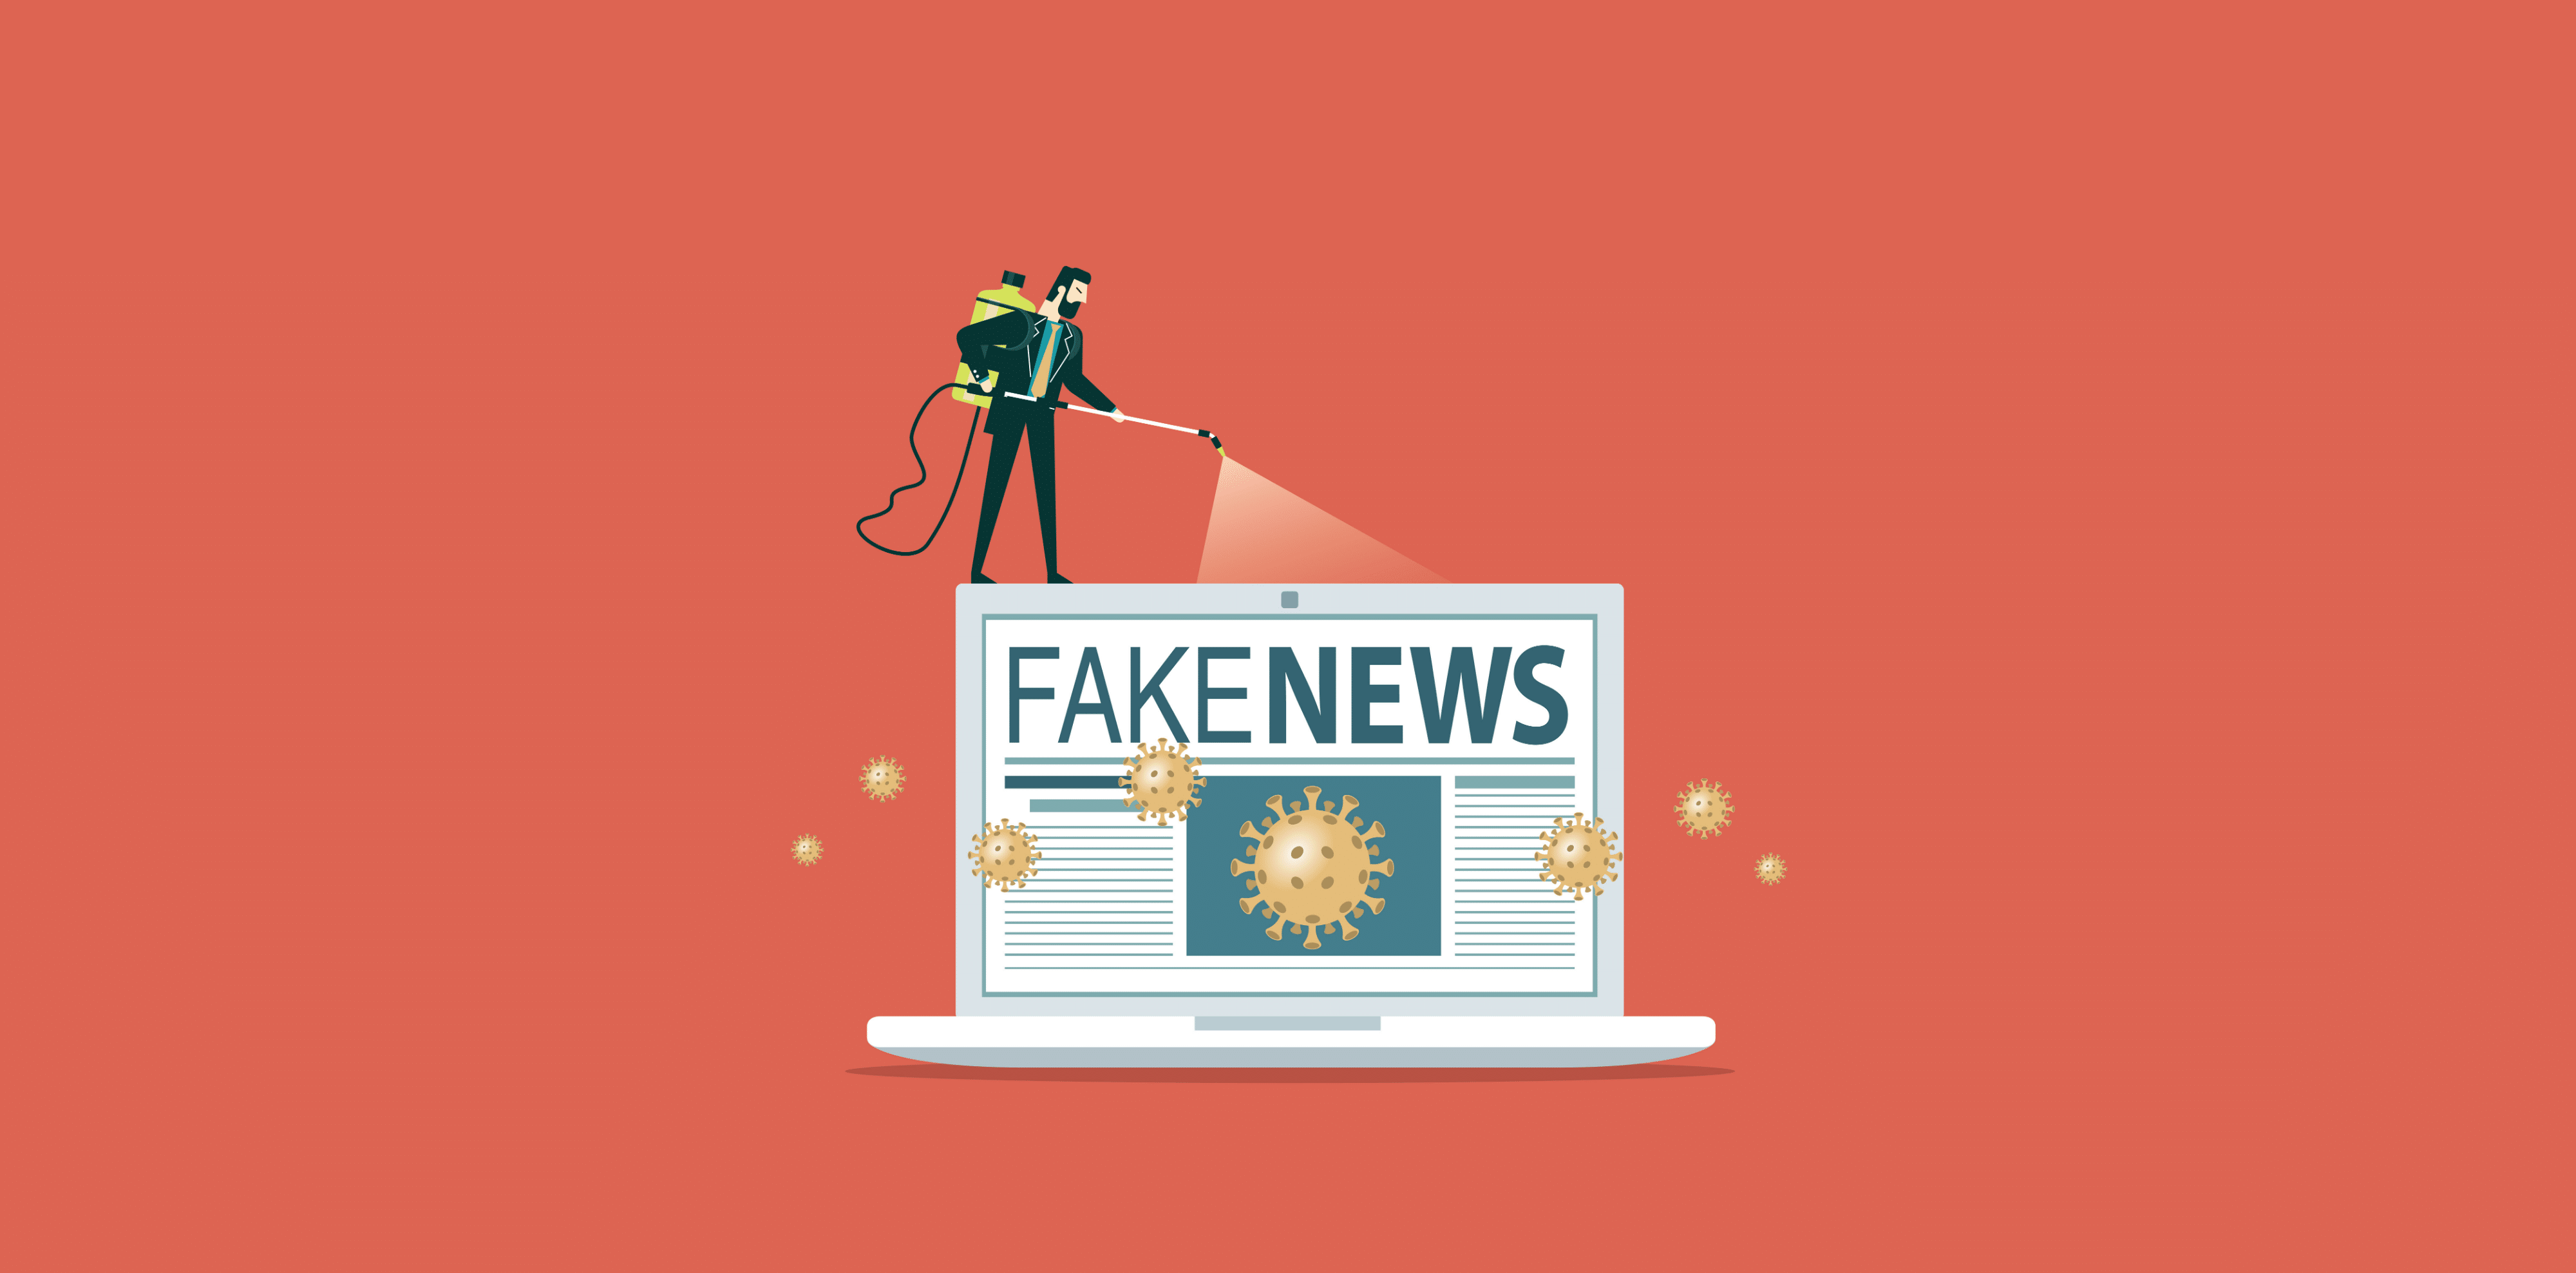 spraying down fake news